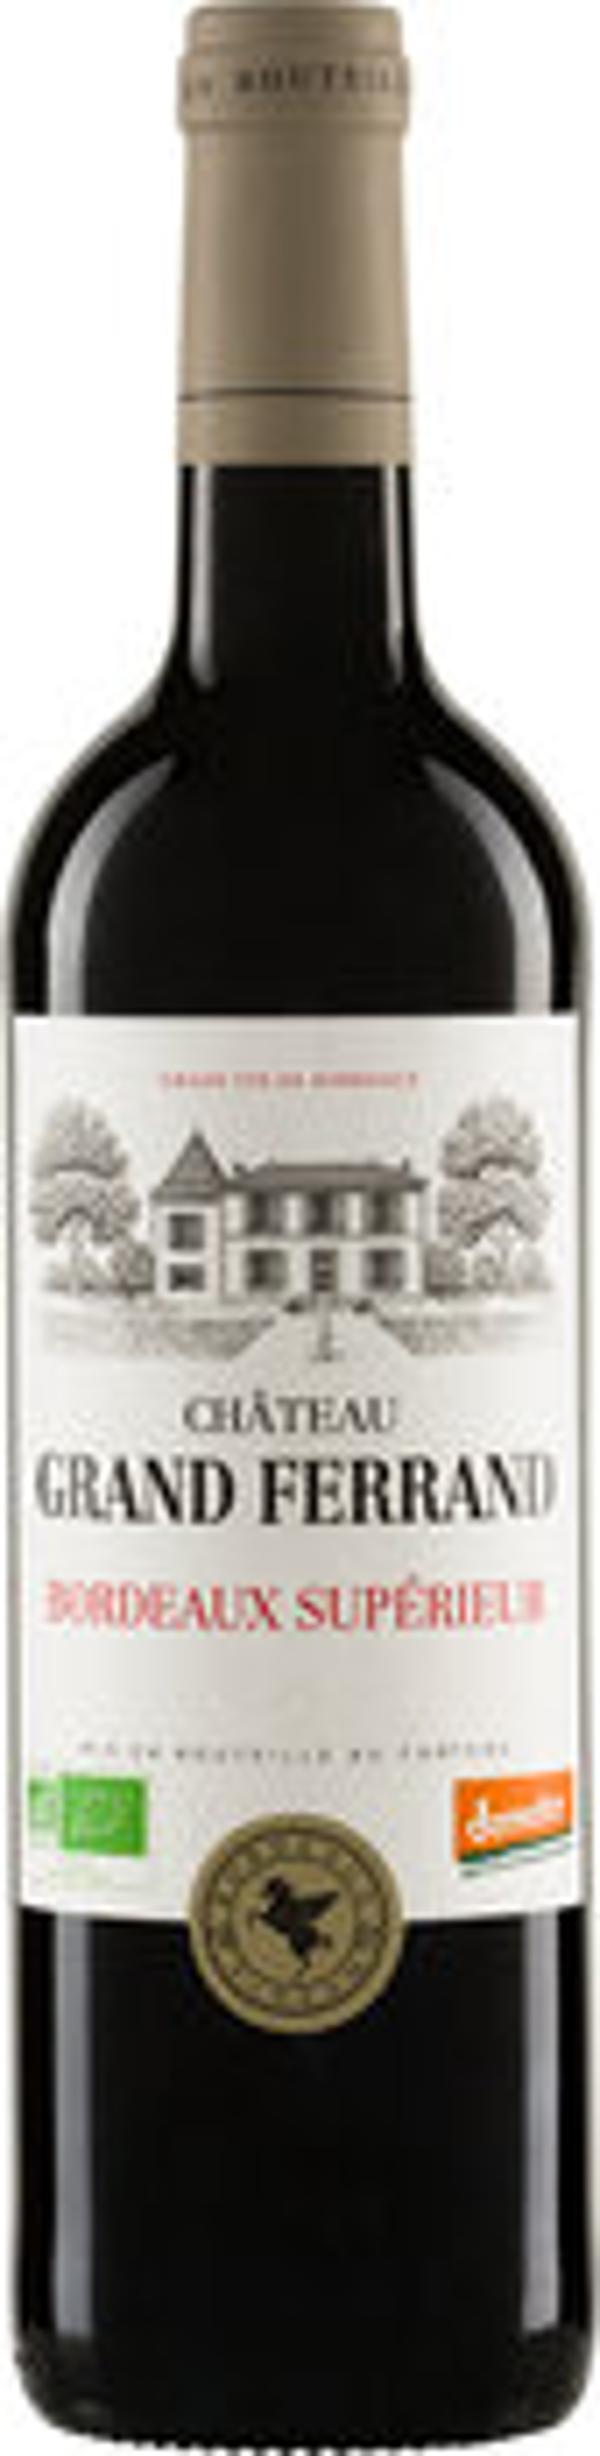 Château Grand Ferrand Bordeaux Supérieur AOP 2021 - 0,75l - Biobote Emsland